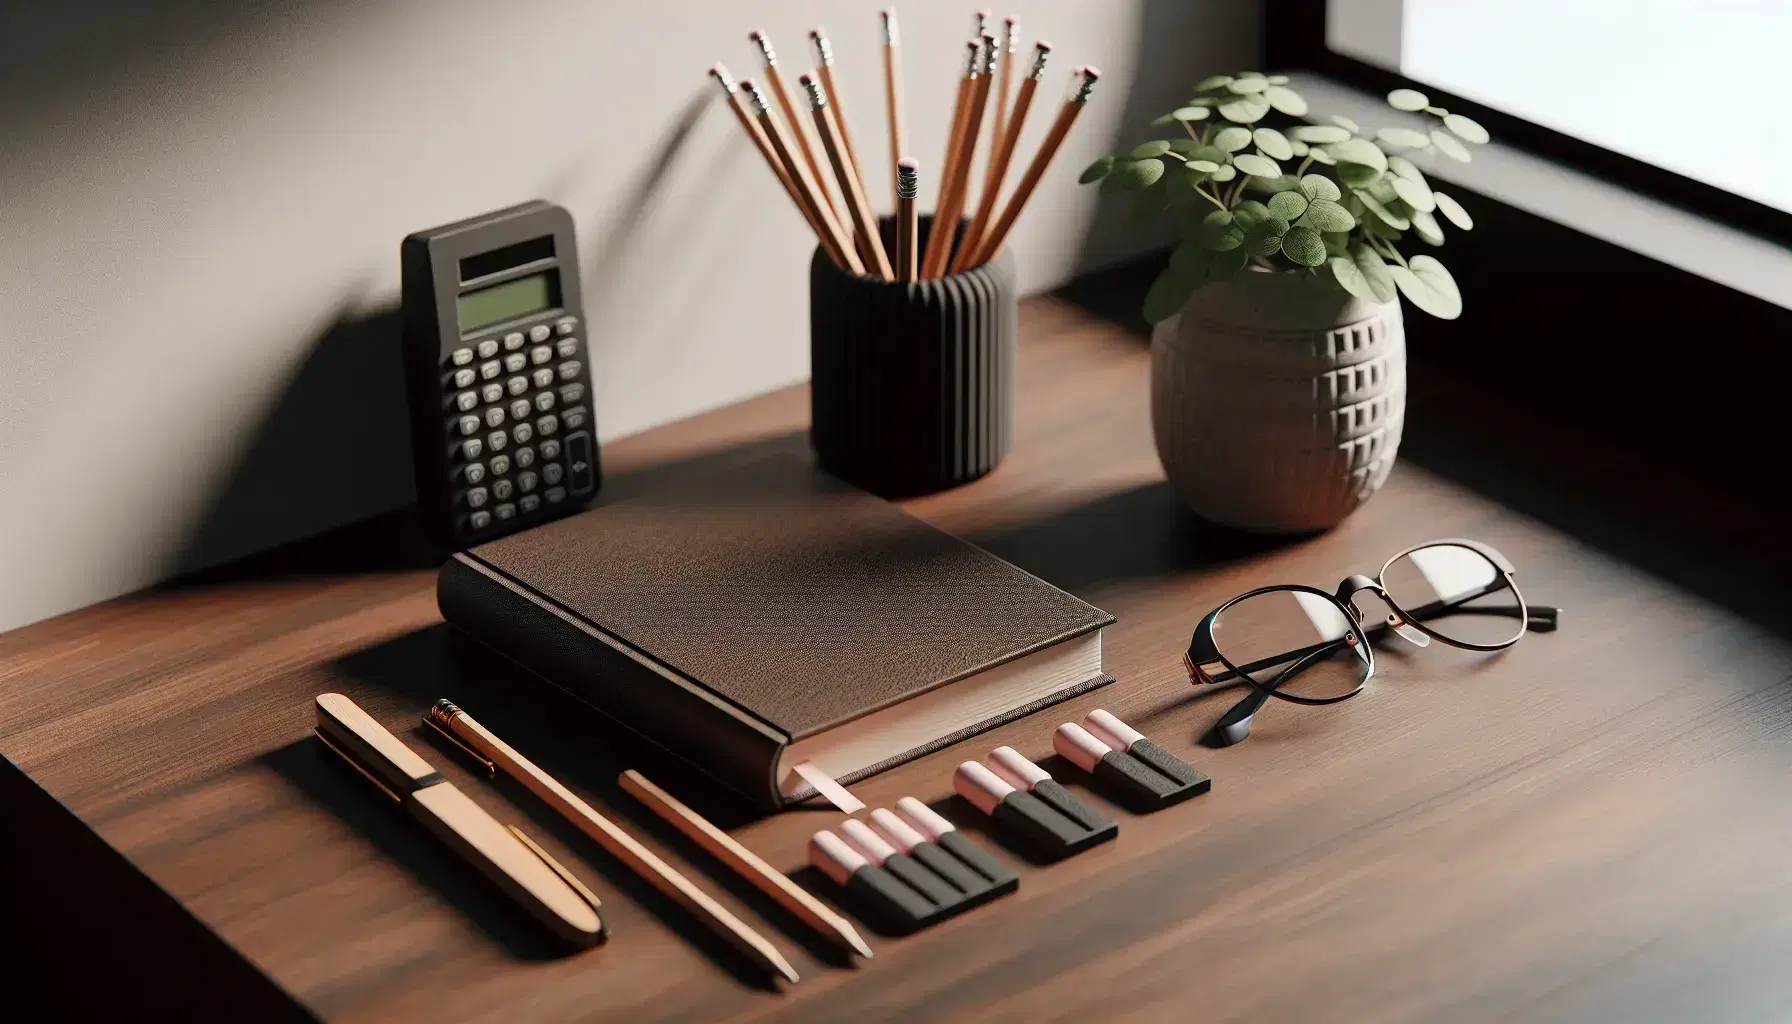 Escritorio de madera oscura con libro, calculadora científica, lápices y gafas metálicas junto a planta en maceta blanca, ambiente de estudio organizado.